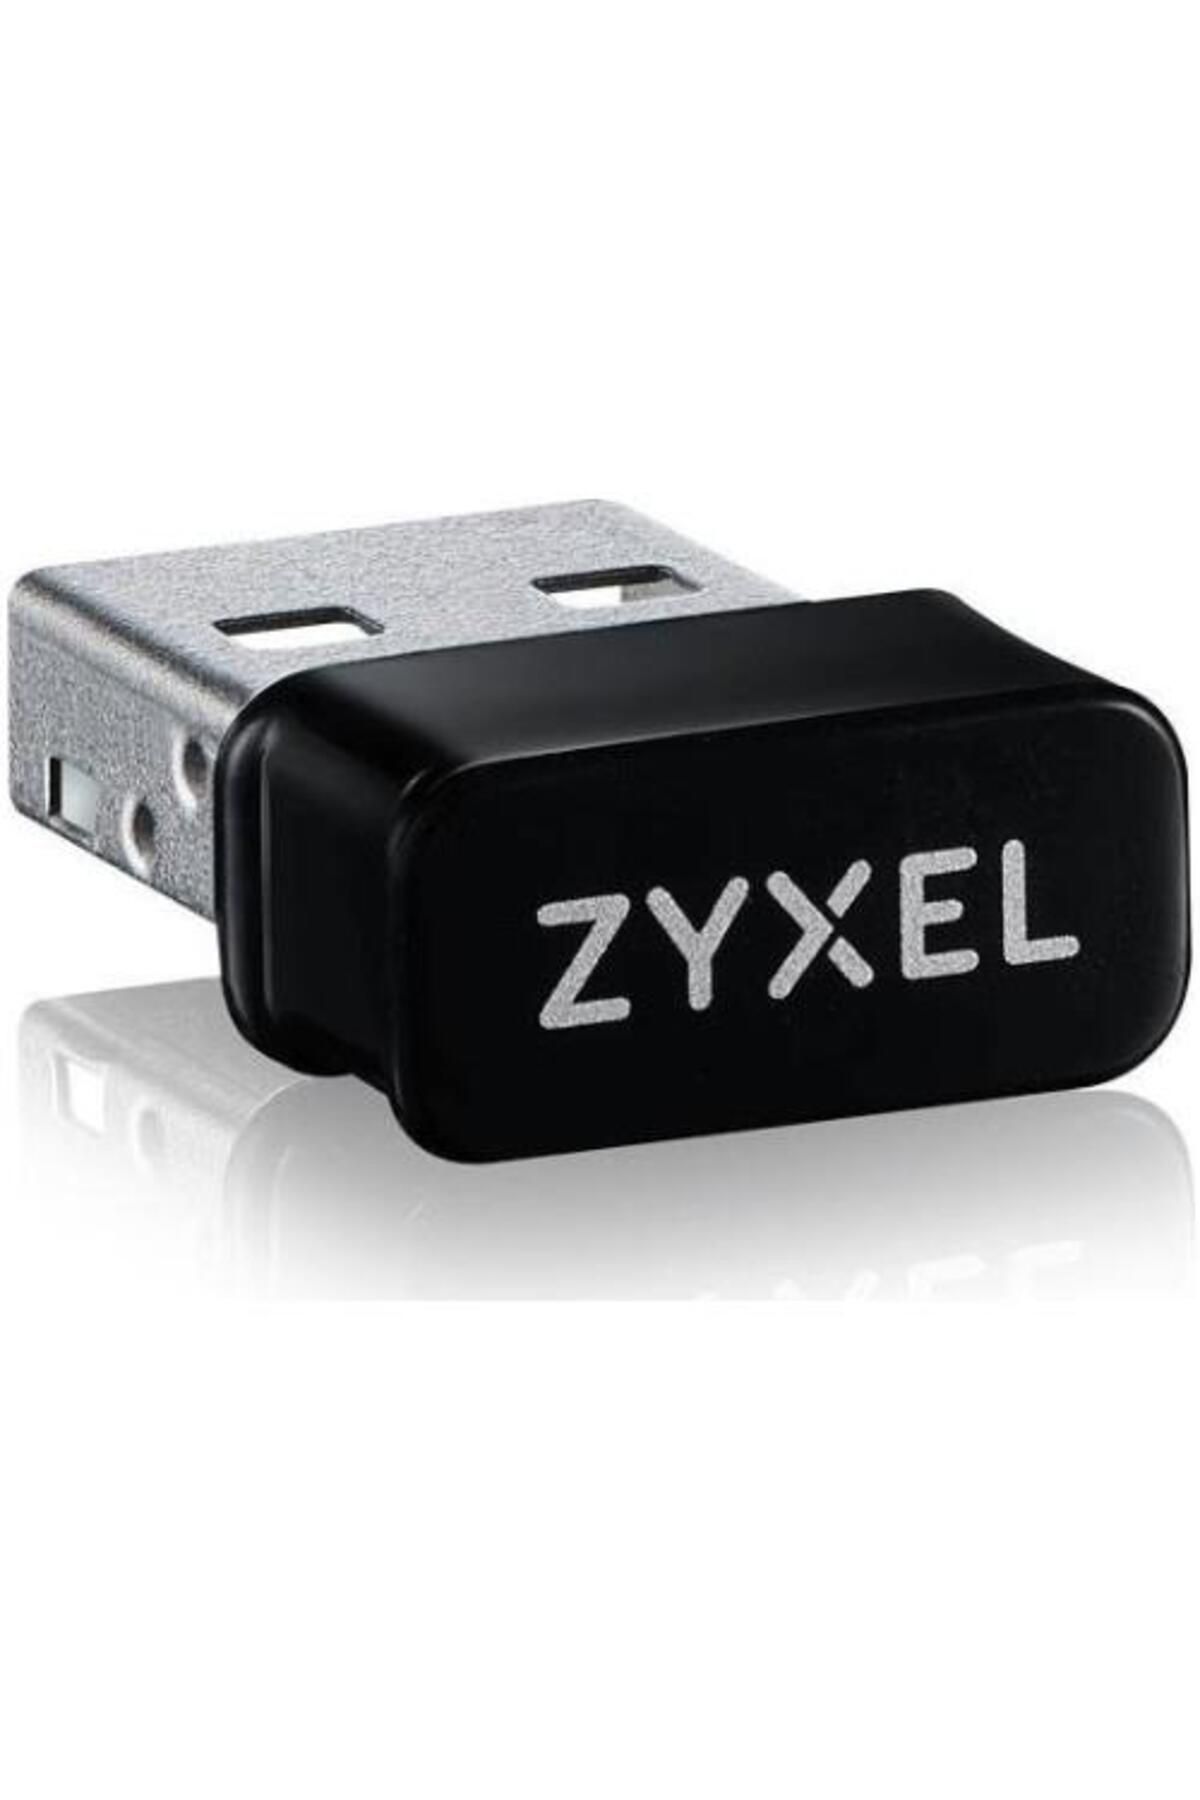 Zyxel Nwd6602 Ac1200 Dualband Wi-fi Usb Adaptör